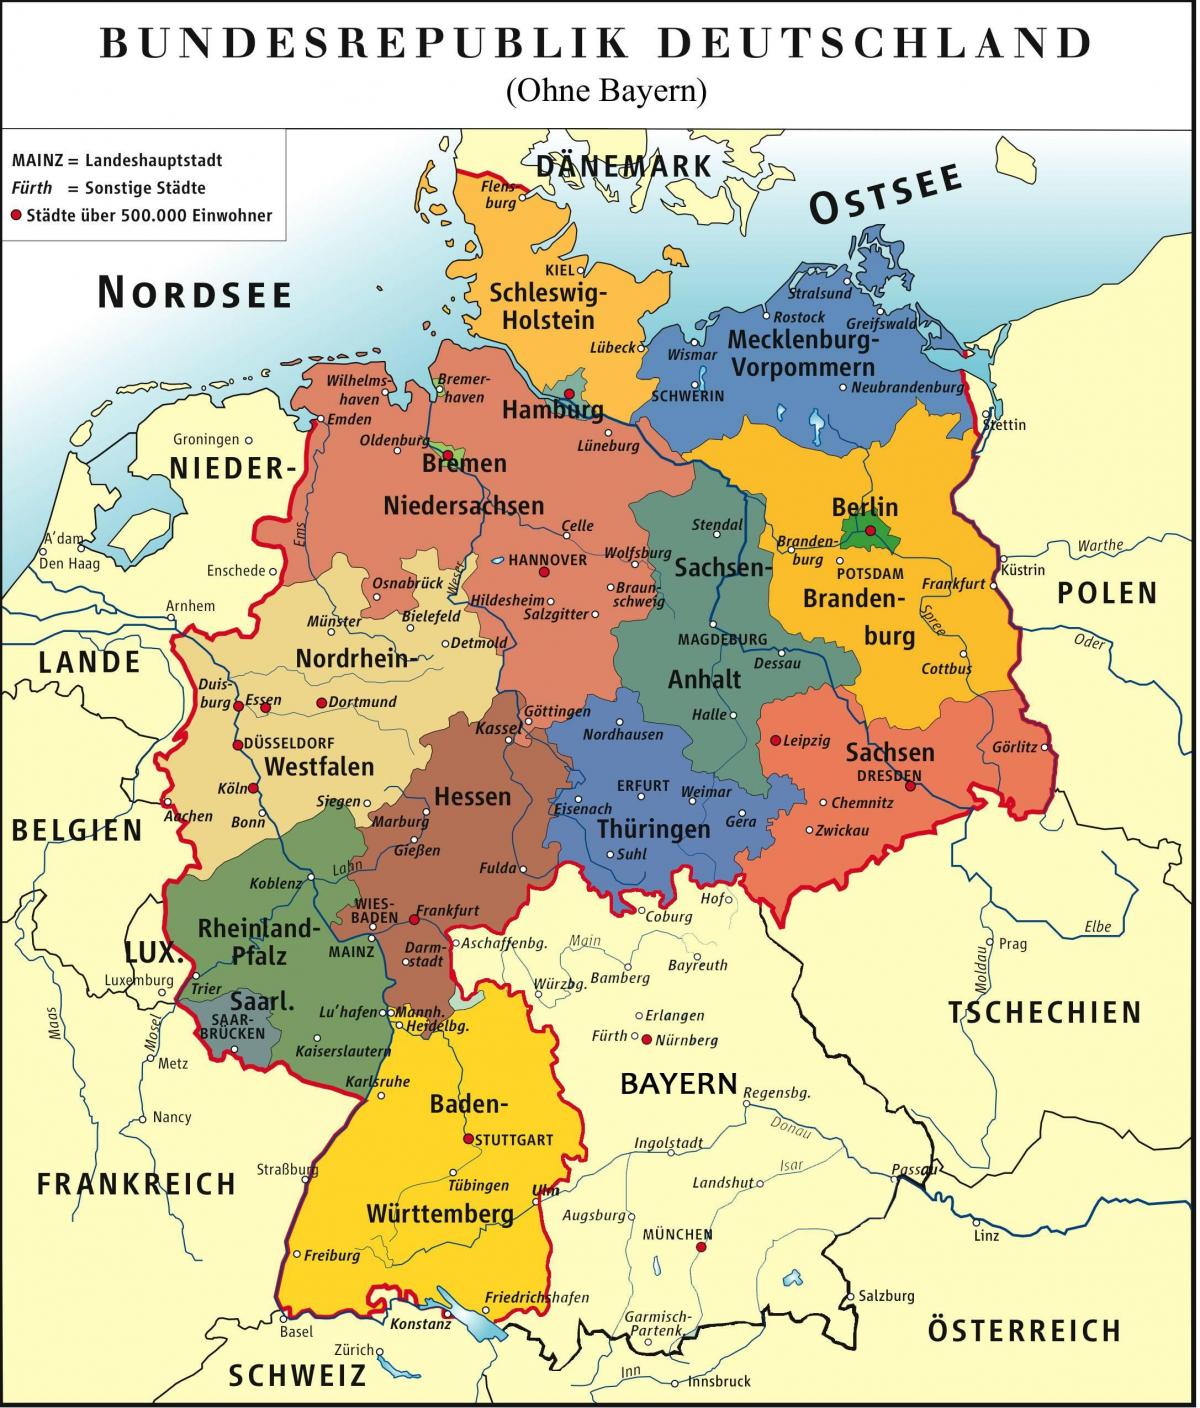 bayern munich რუკა